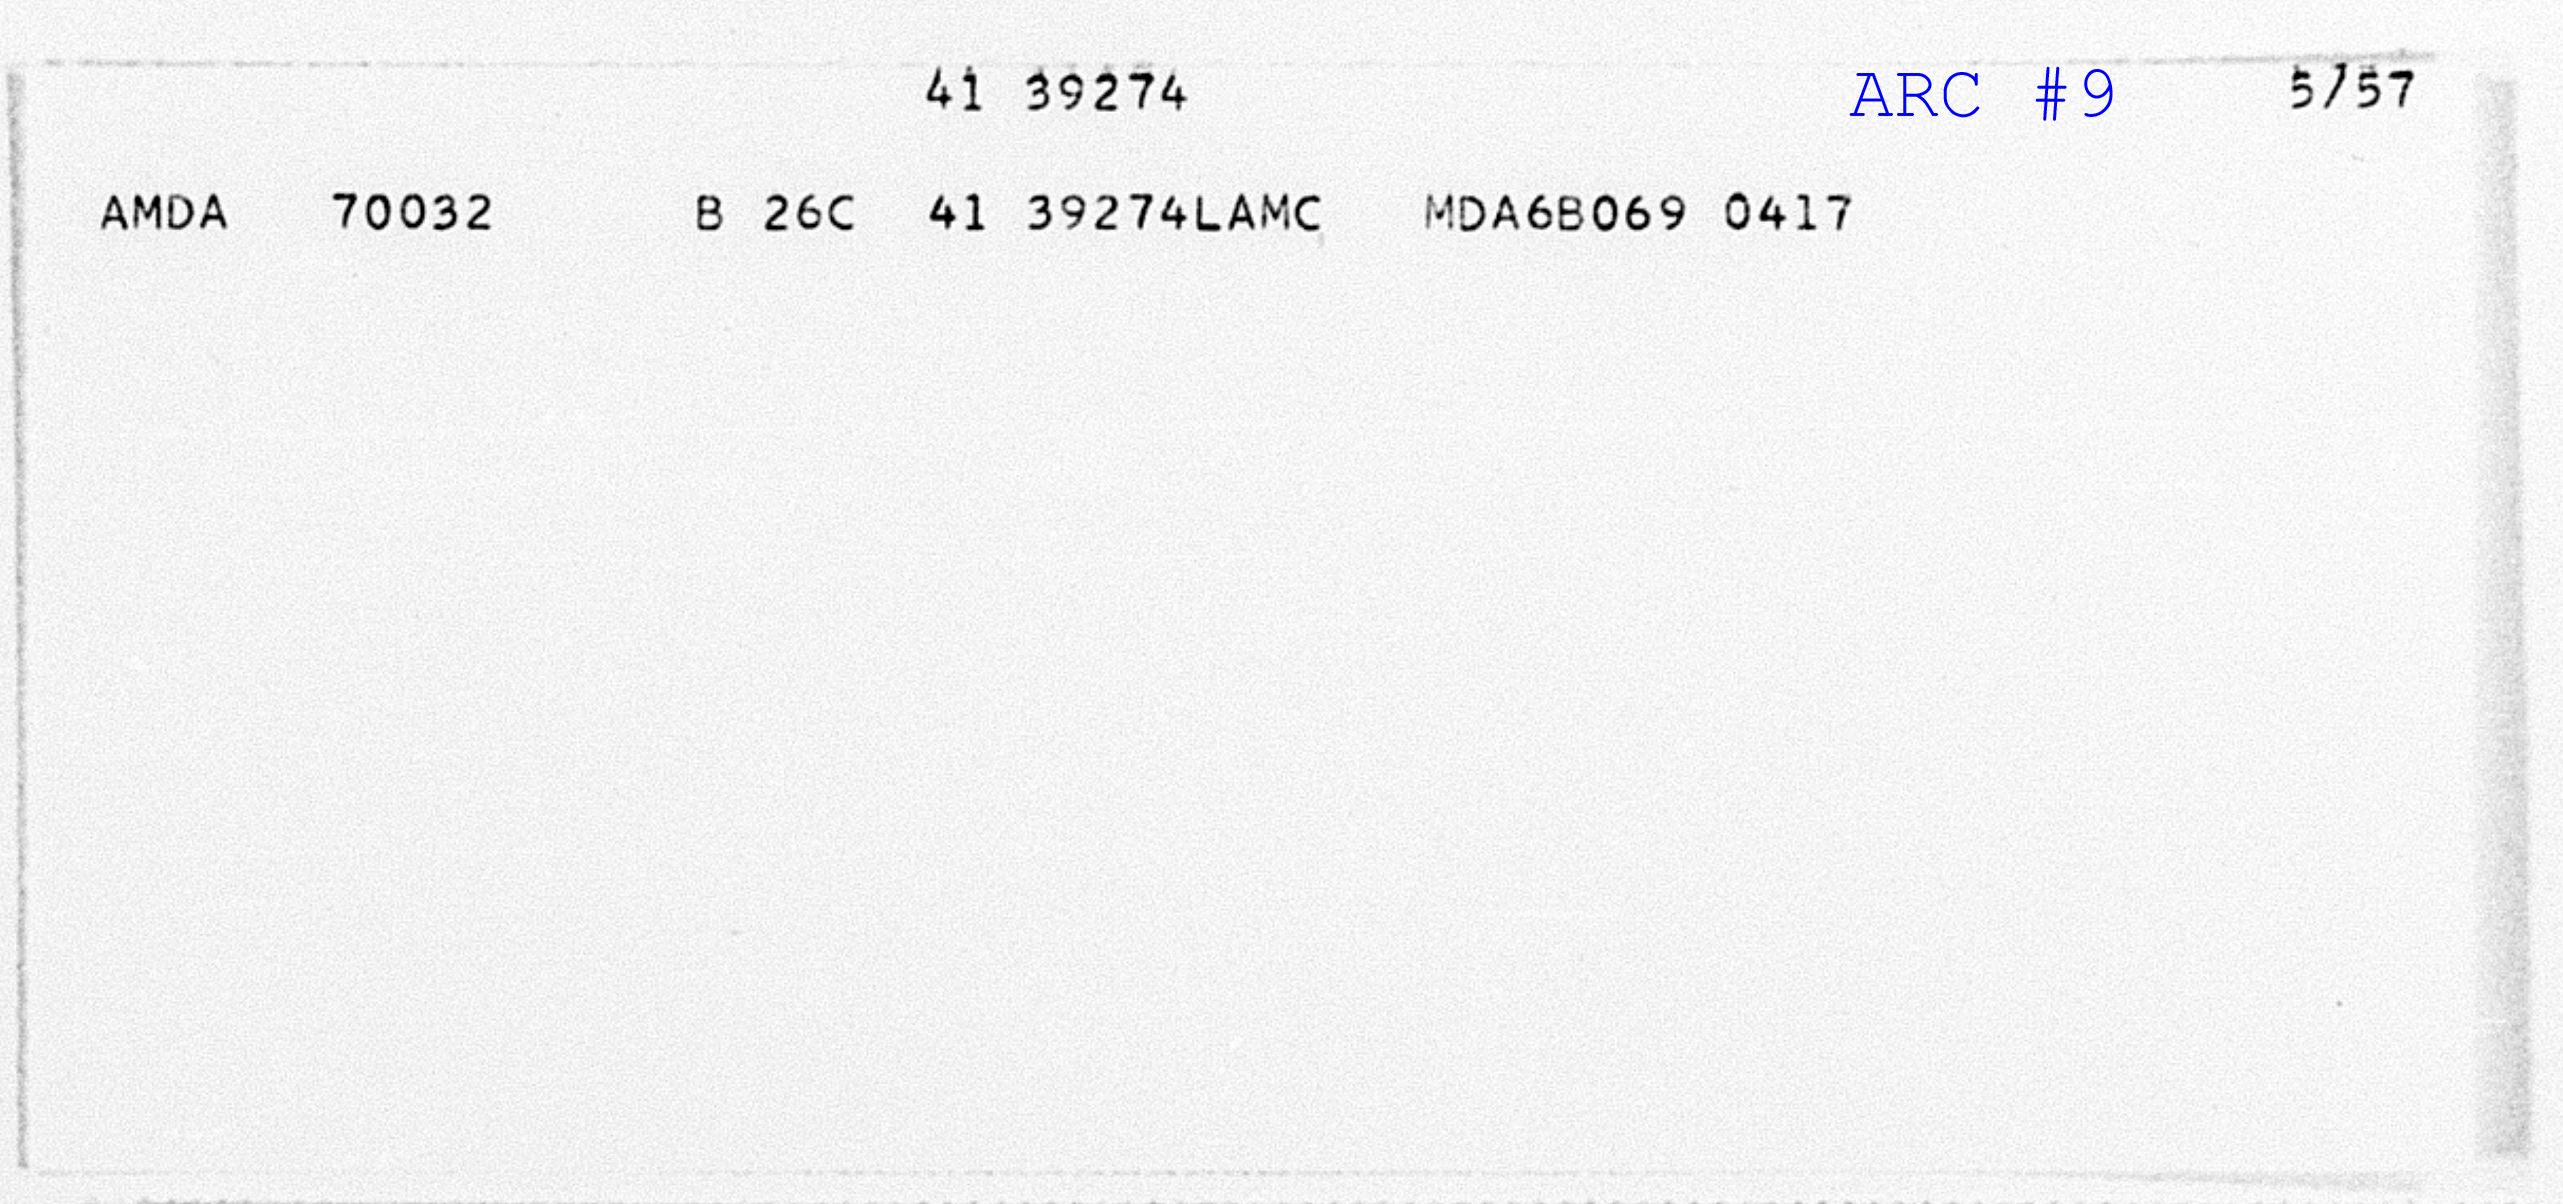 Aircraft Record Card # 9